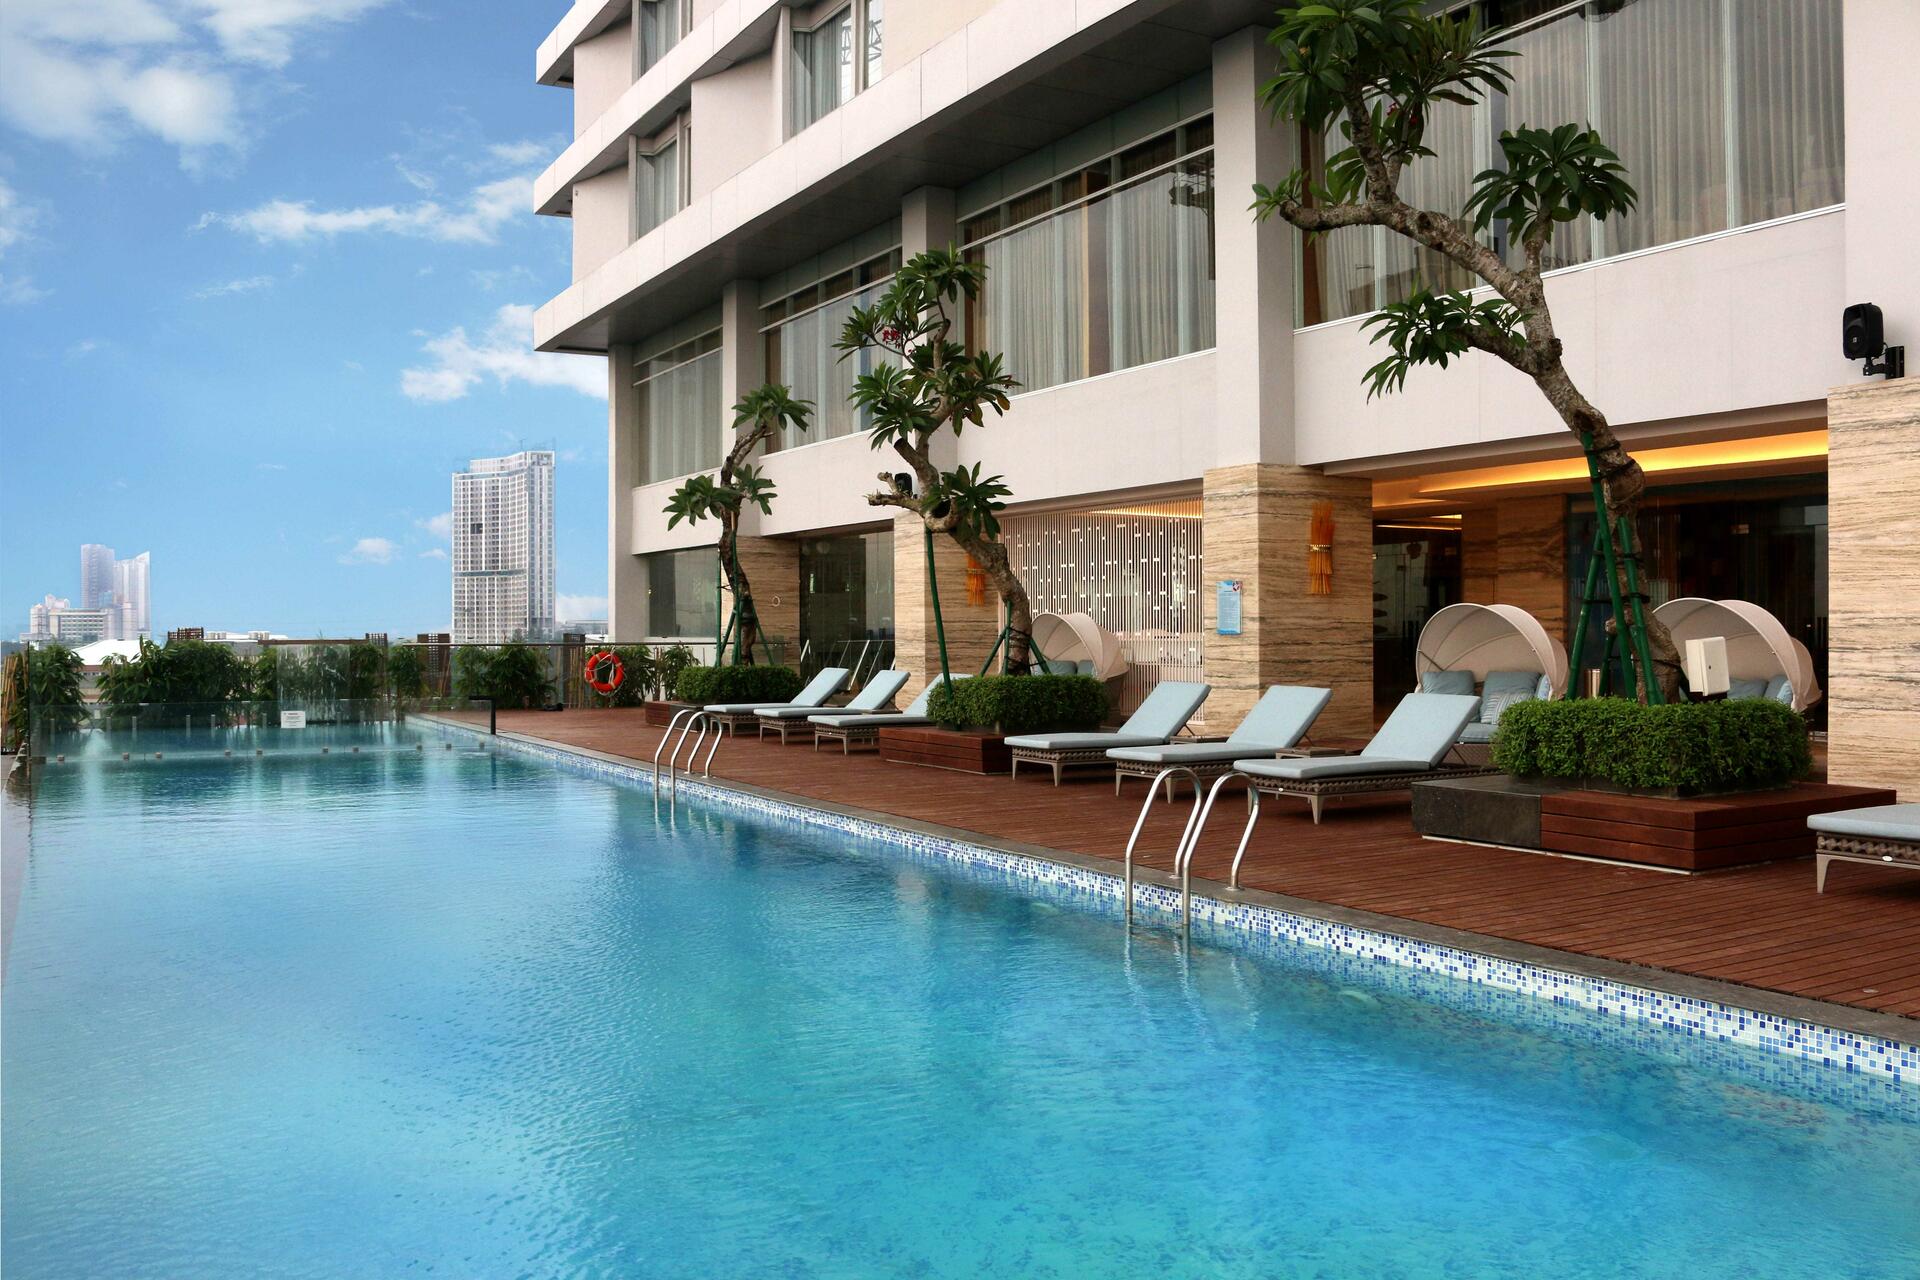 4 Hotel Mewah di Surabaya dengan Fasilitas Rooftop Pool